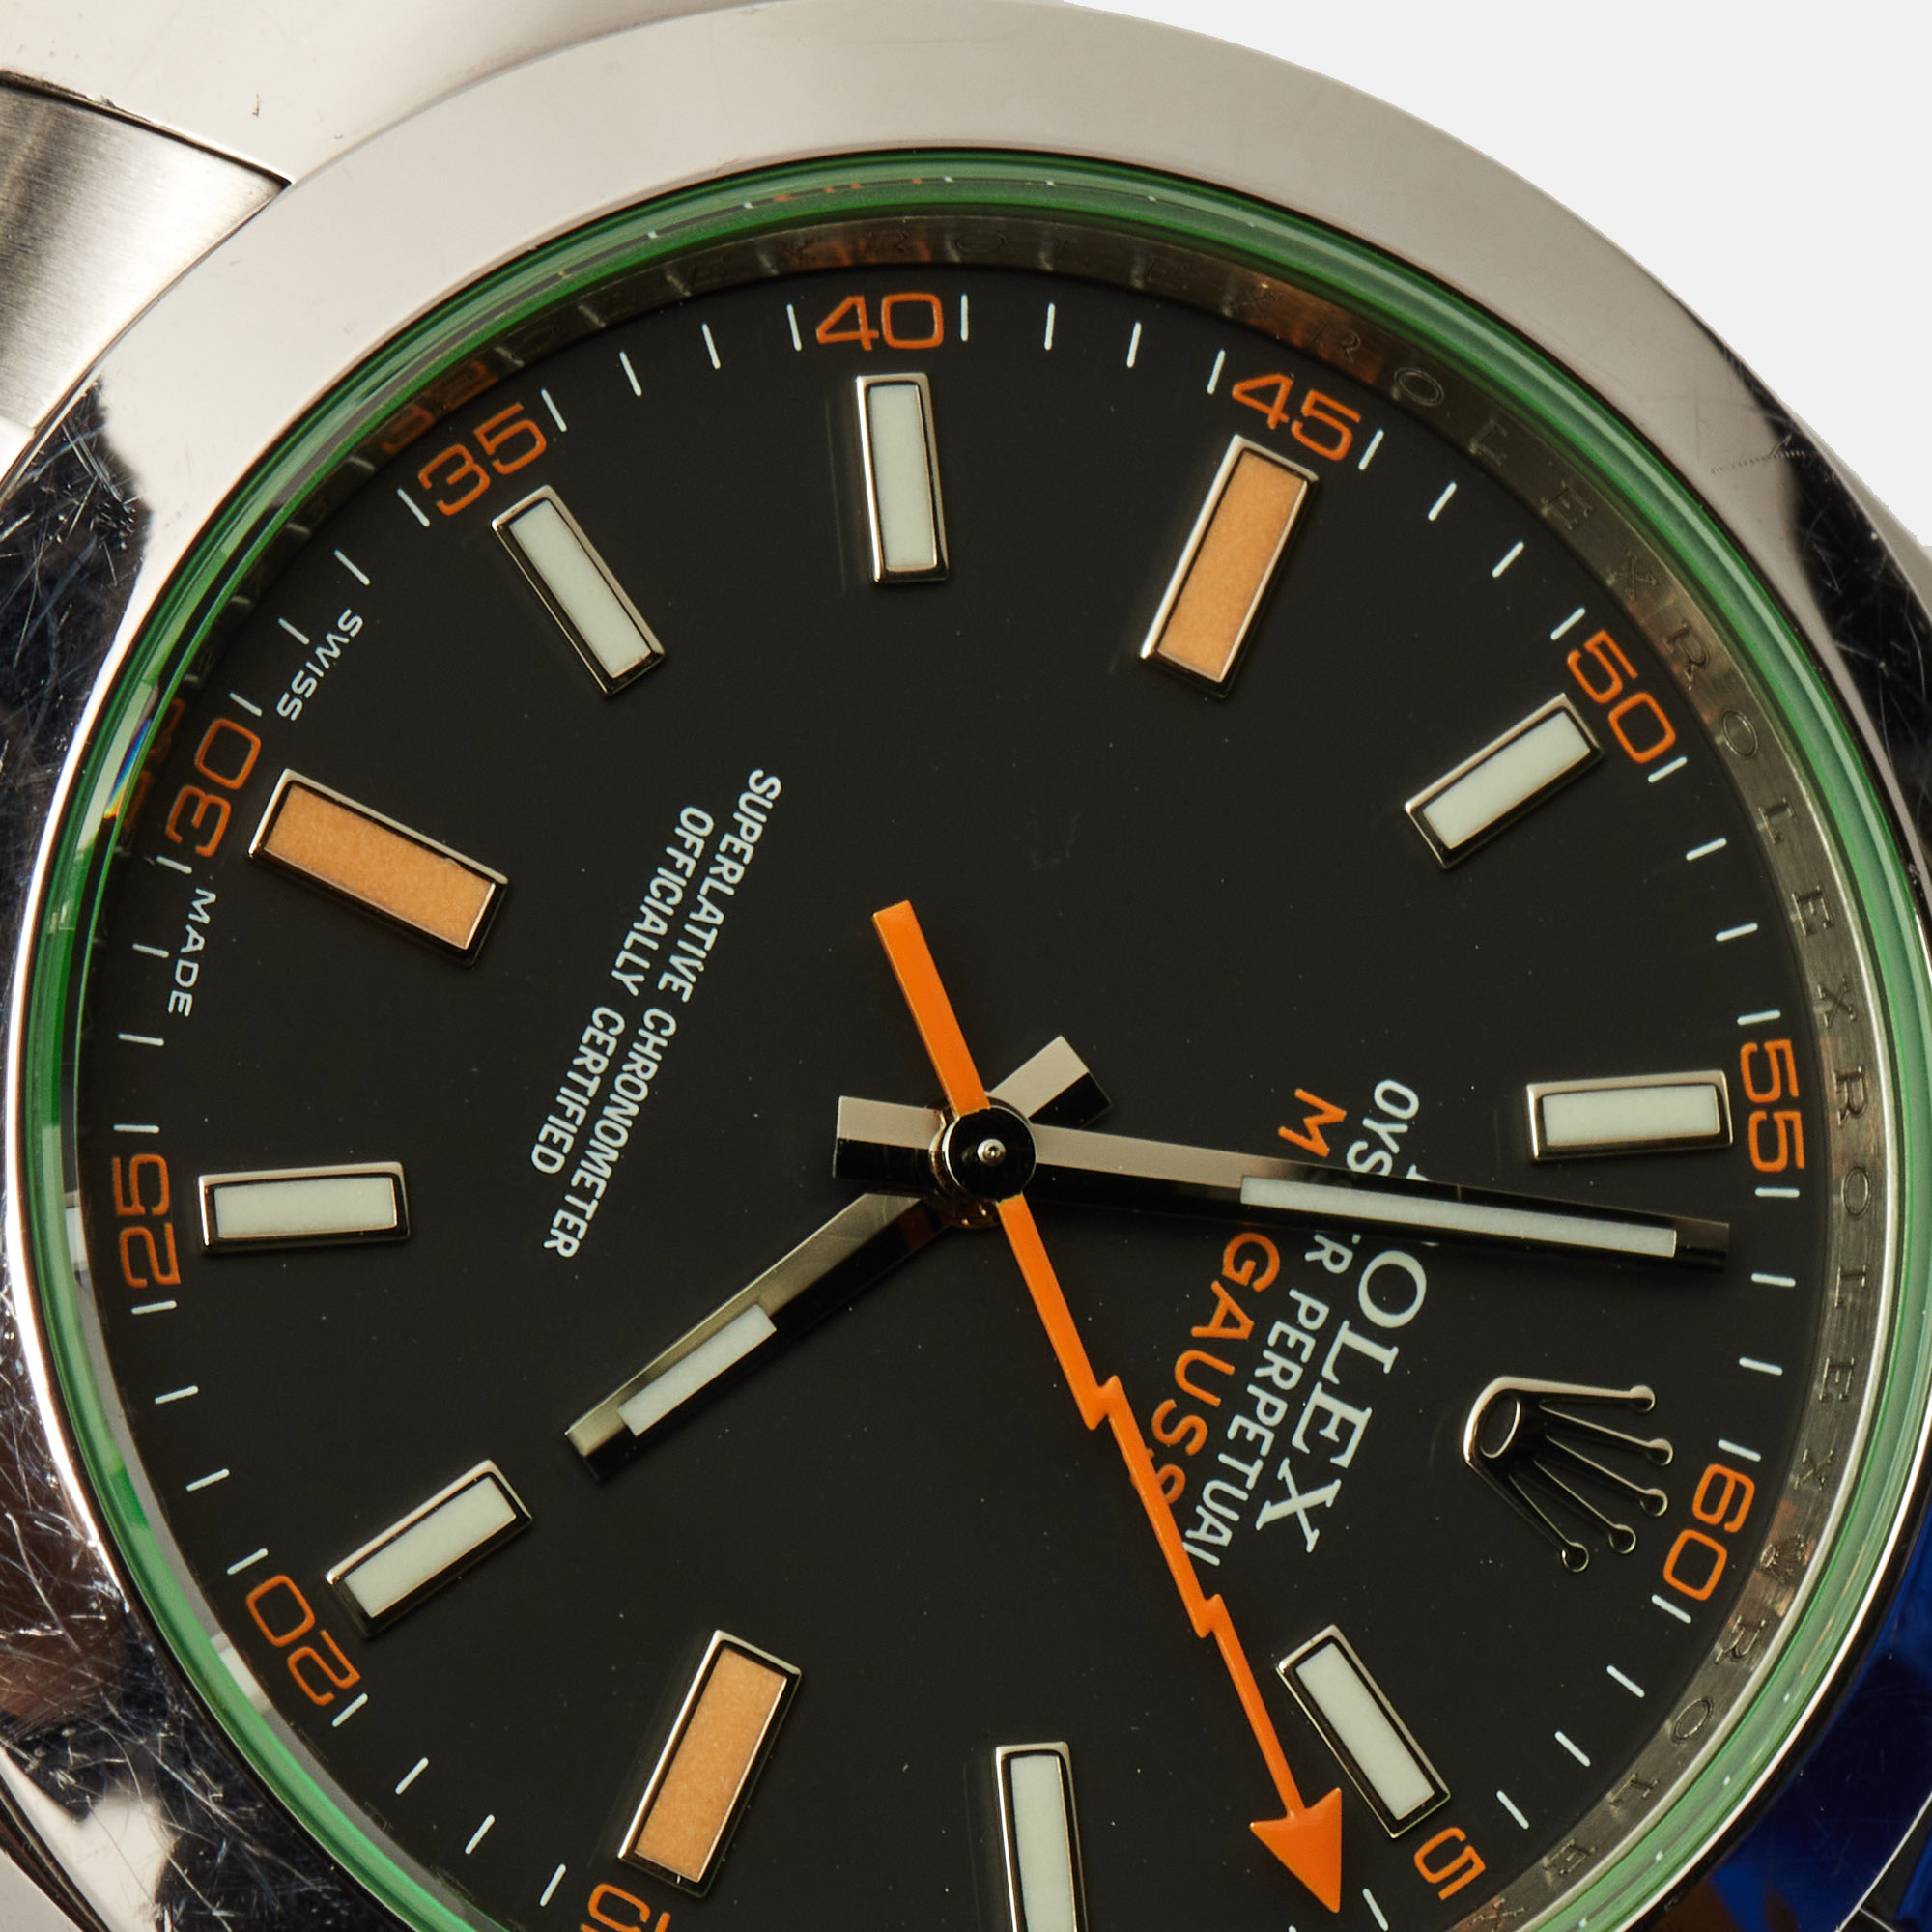 Rolex Black Oystersteel Milgauss M116400GV-0001 Men's Wristwatch 40 Mm